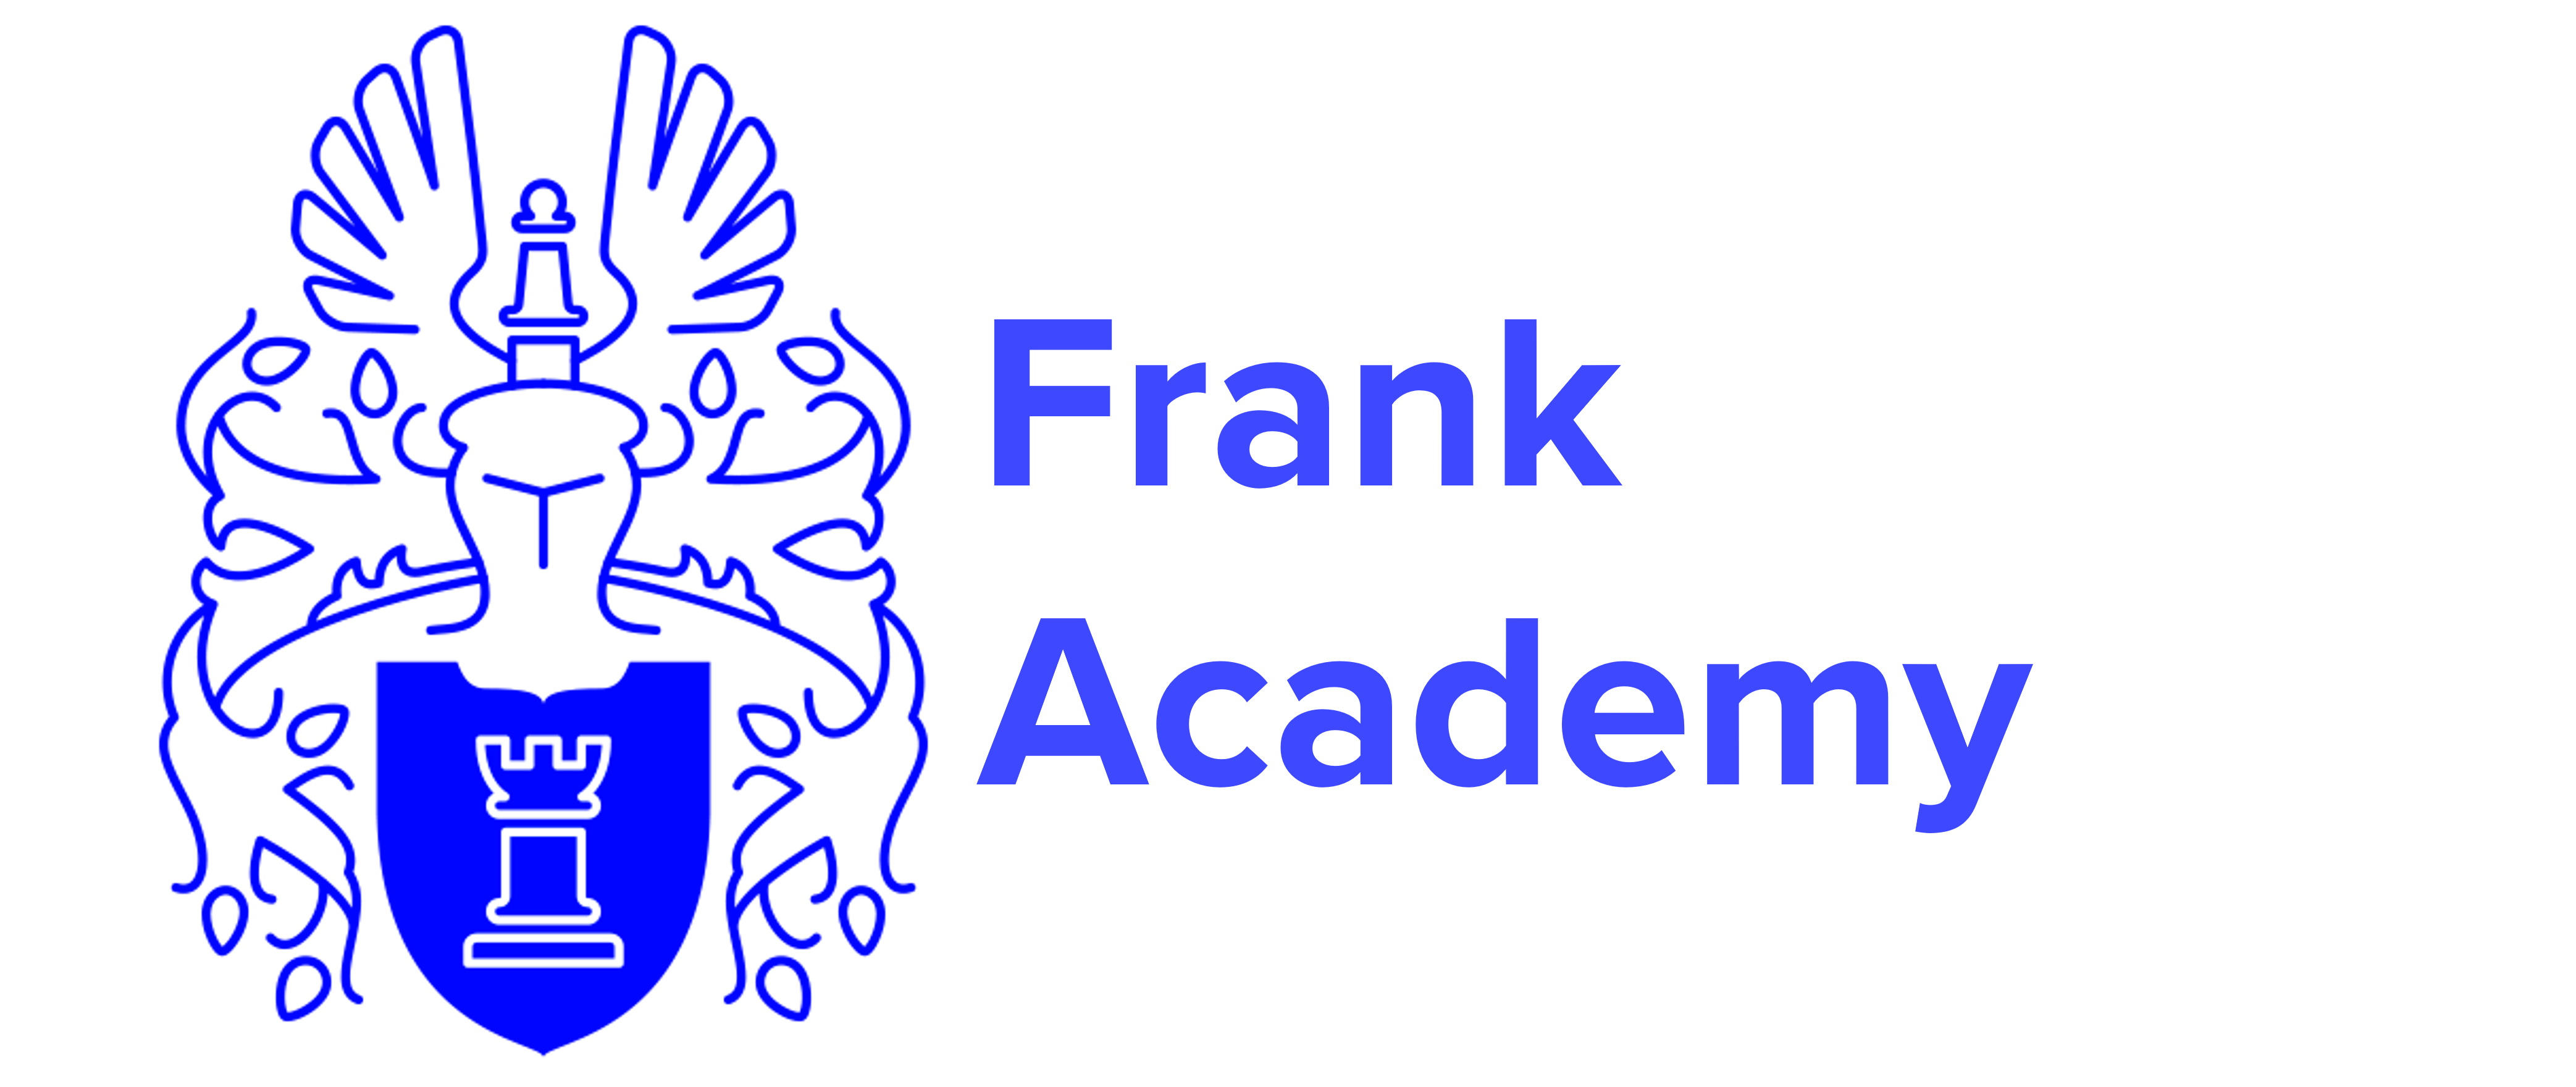 Frank Academy